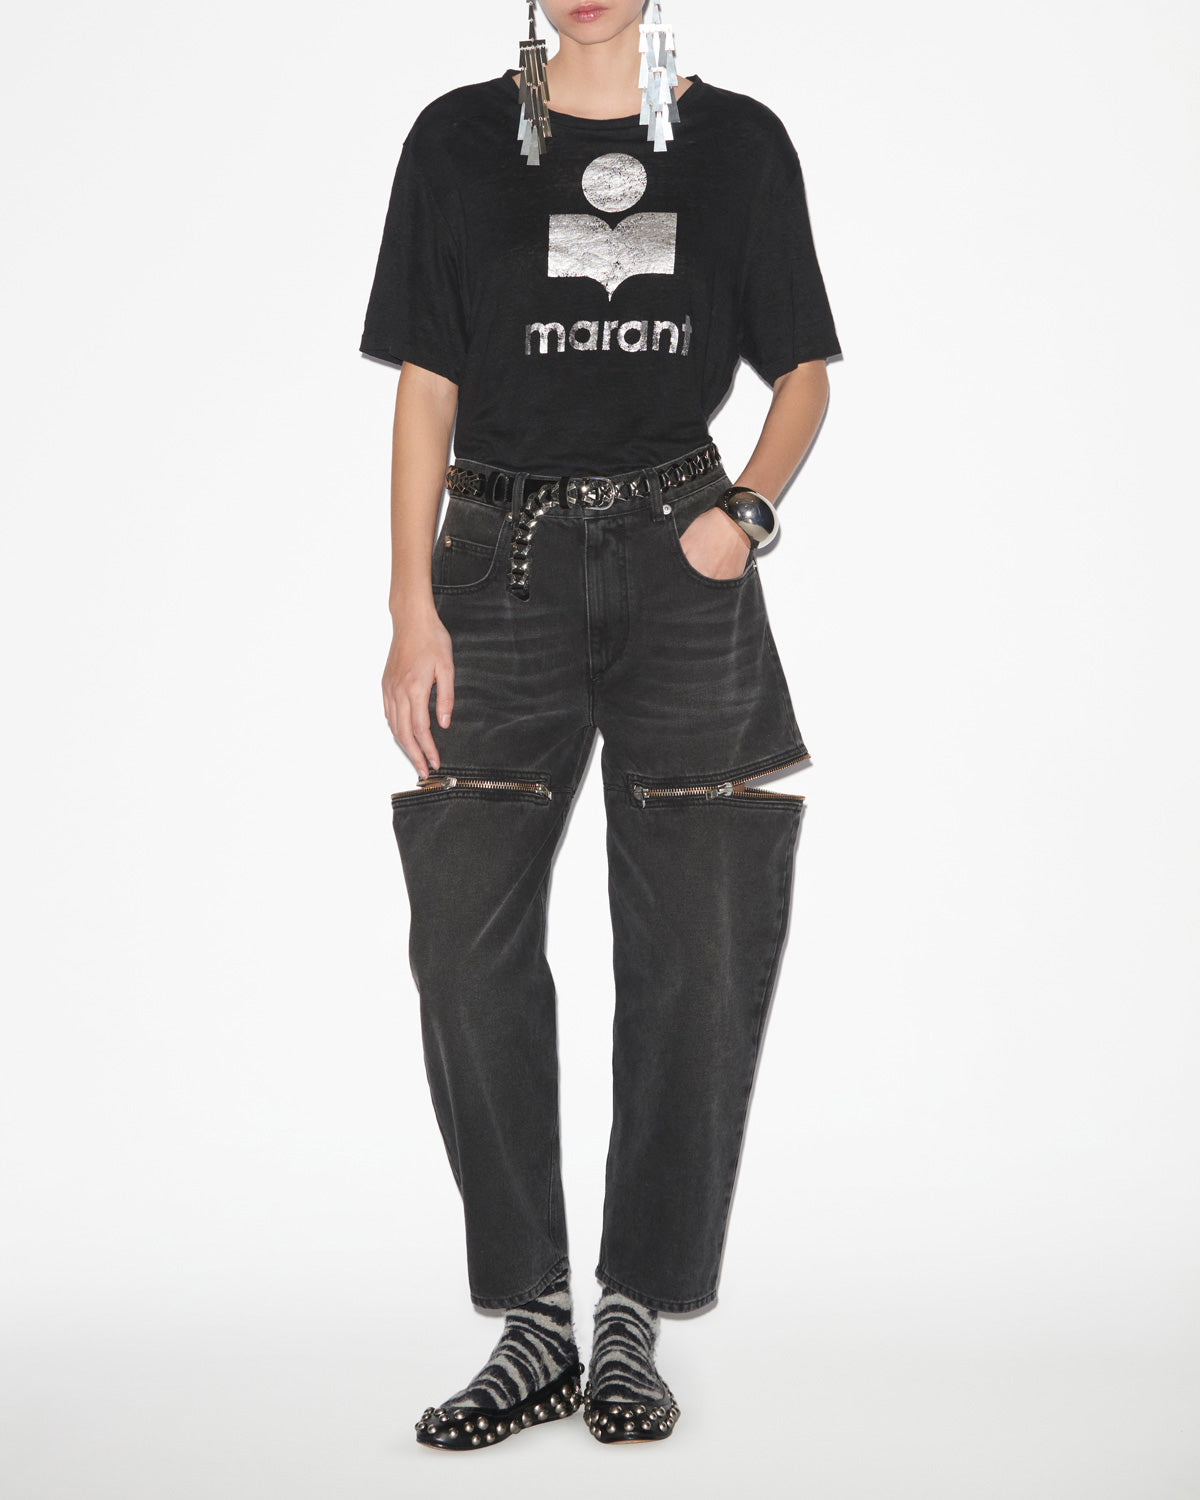 즈웰(zewel) 티셔츠 Woman 검은색 4